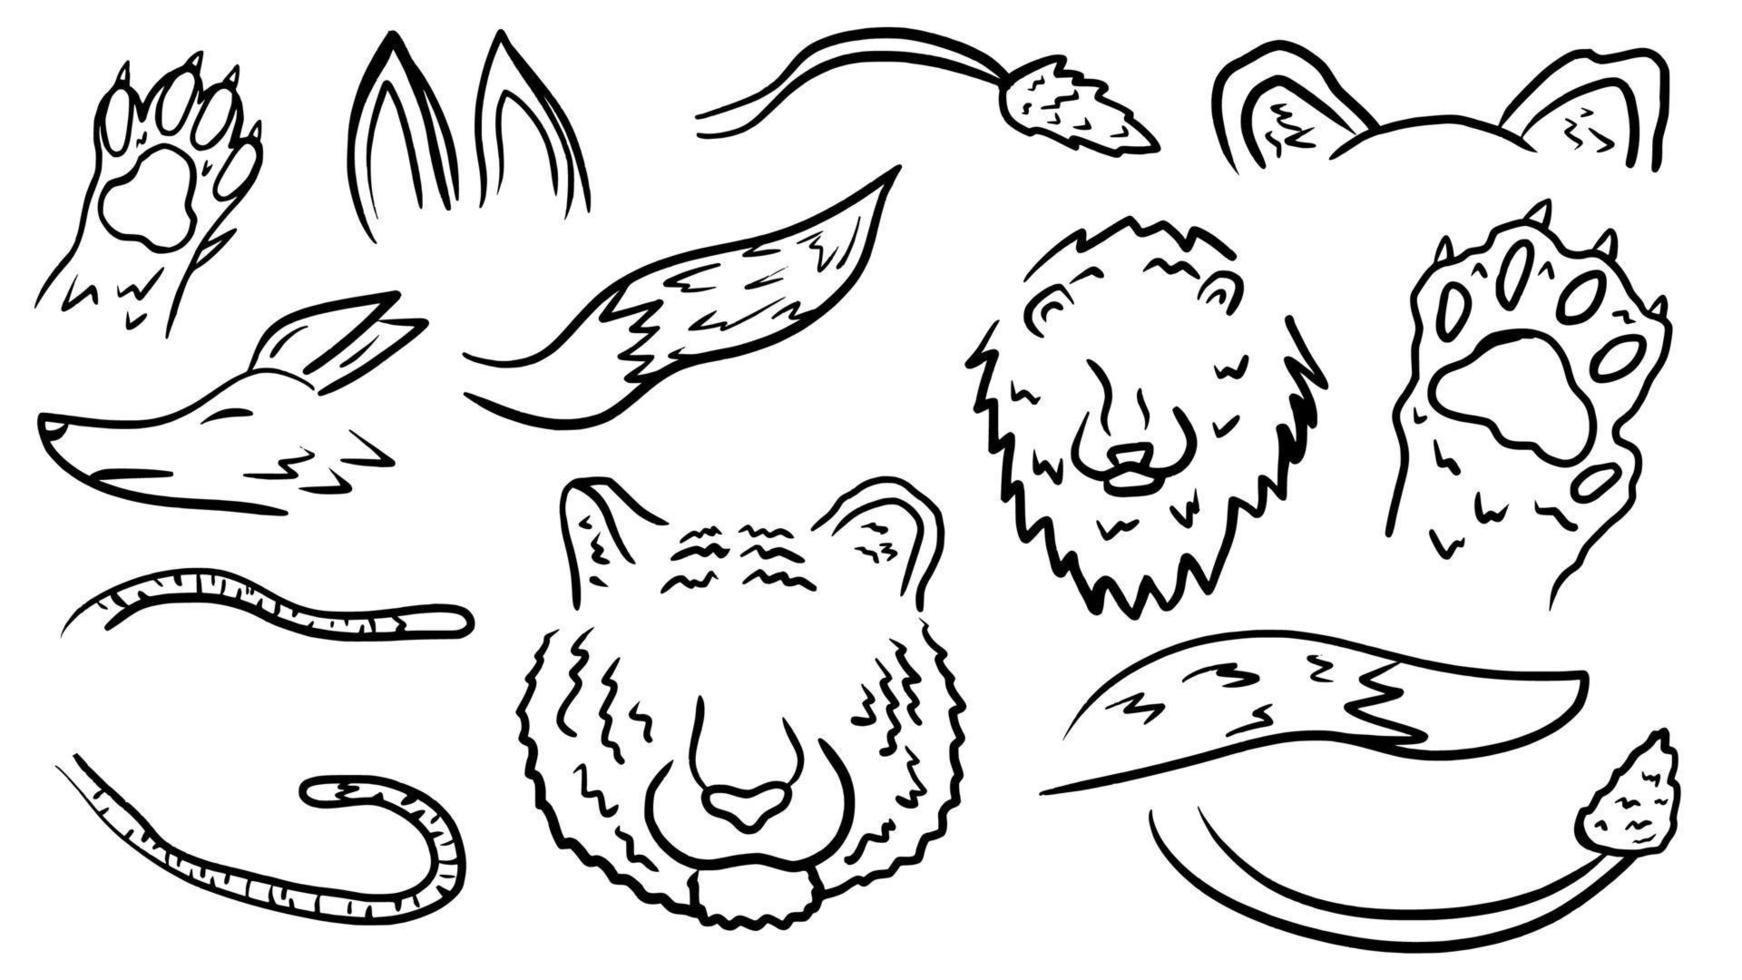 partie du corps animal dessiné à la main doodle contour vecteur modèle illustration collection pour l'éducation infographie et livre de coloriage